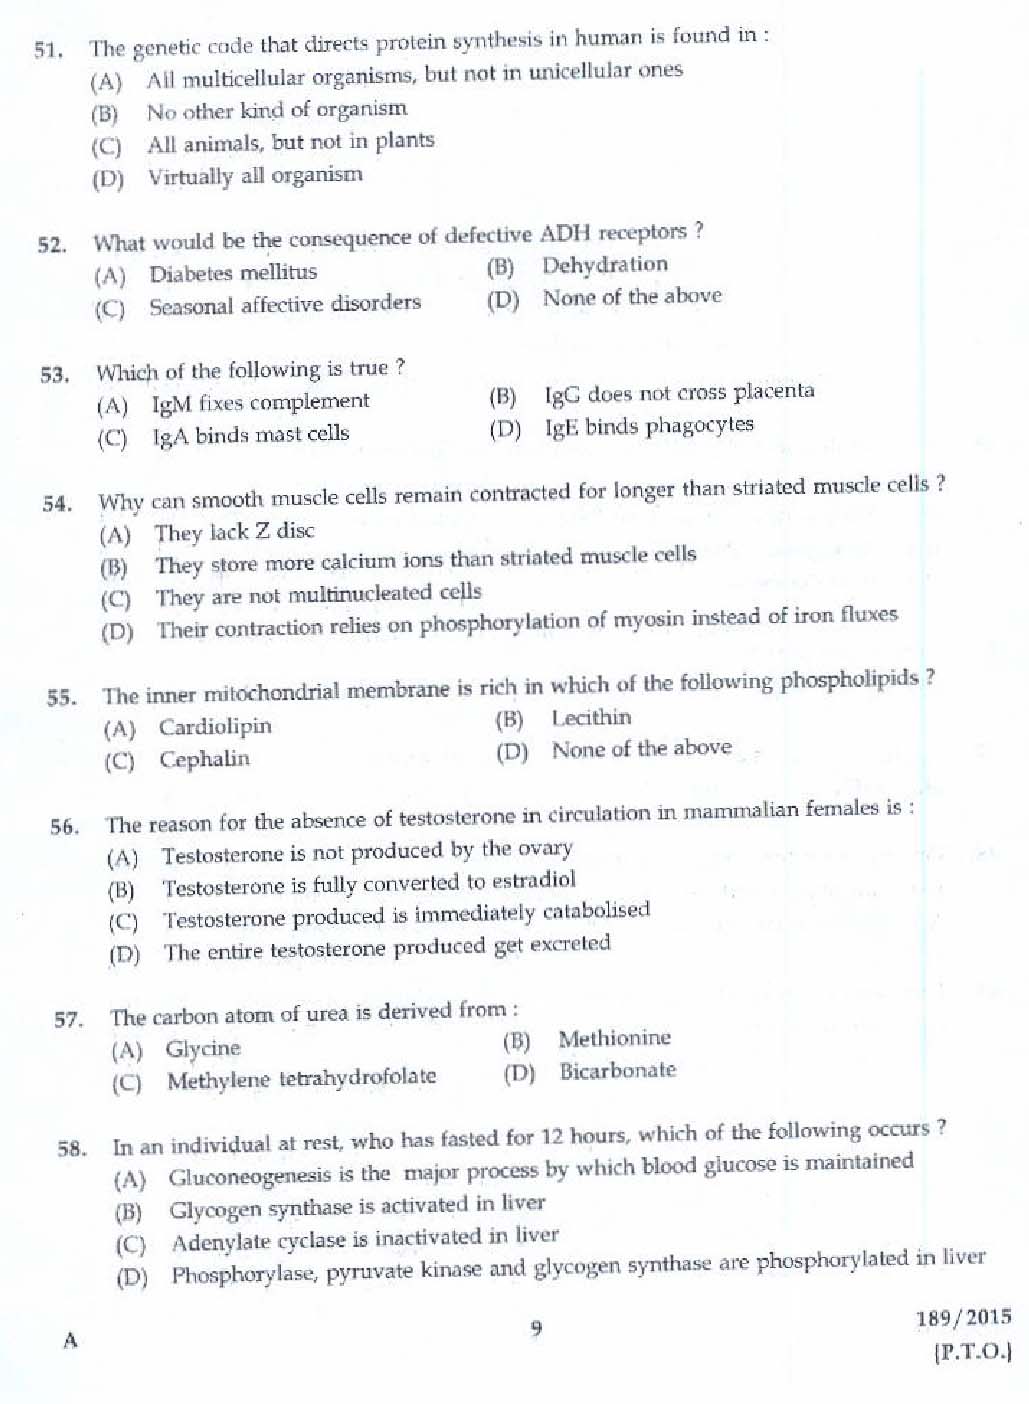 KPSC Bio Chemist Exam 2015 Code 1892015 7